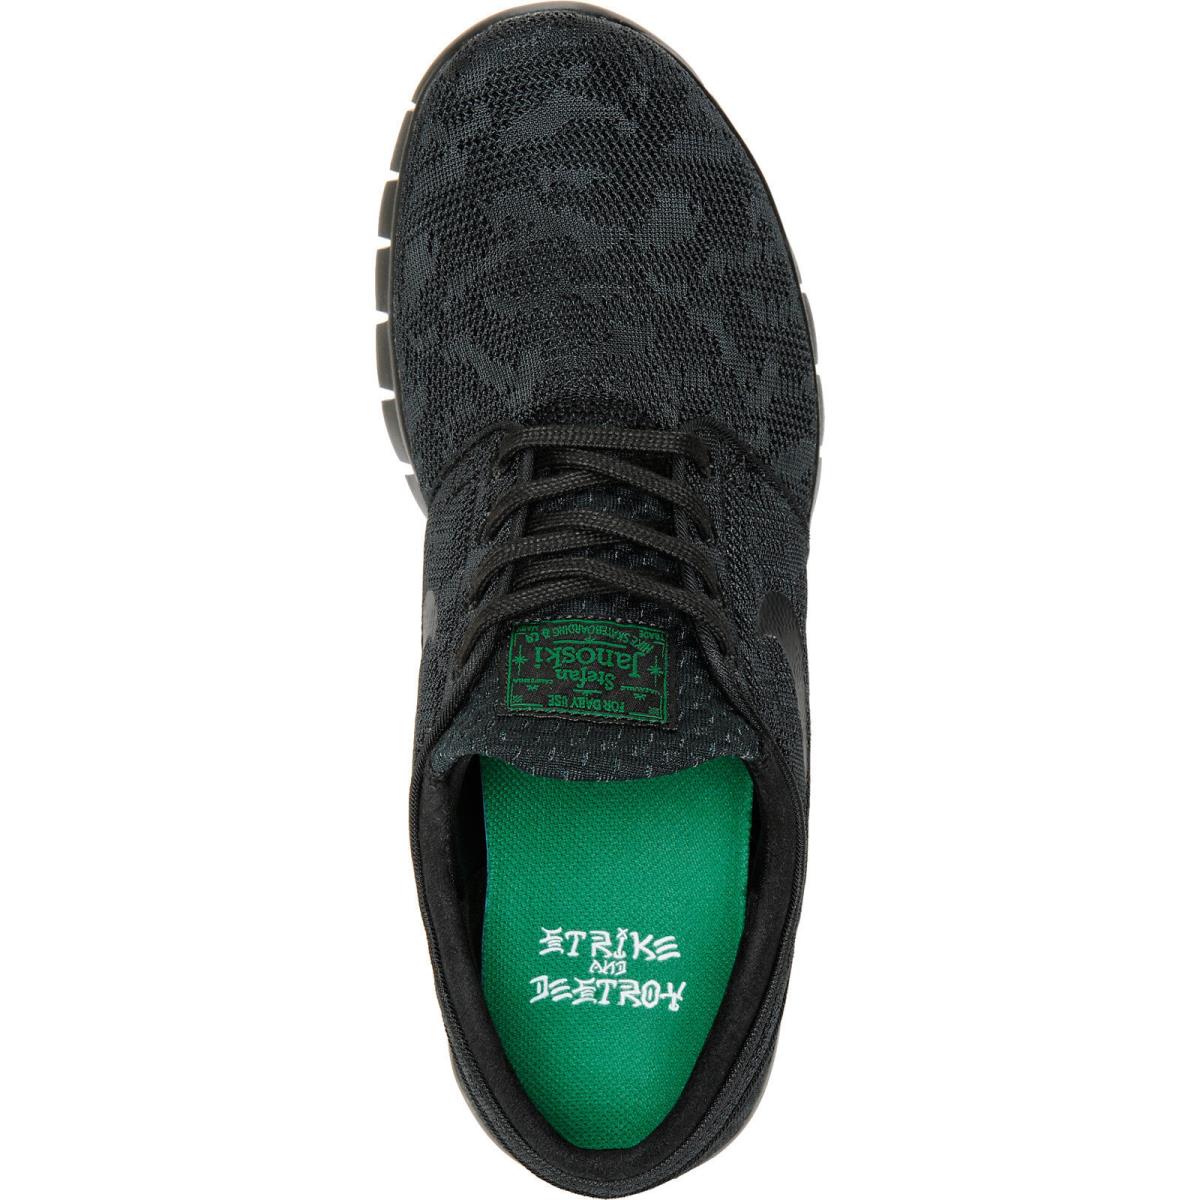 maníaco diferente once Nike Stefan Janoski Max Black Black-pine Green 631303-003 352 Men`s Shoes |  883212401274 - Nike shoes - Black- Pine Green , Black/Black-Pine Green  Manufacturer | SporTipTop